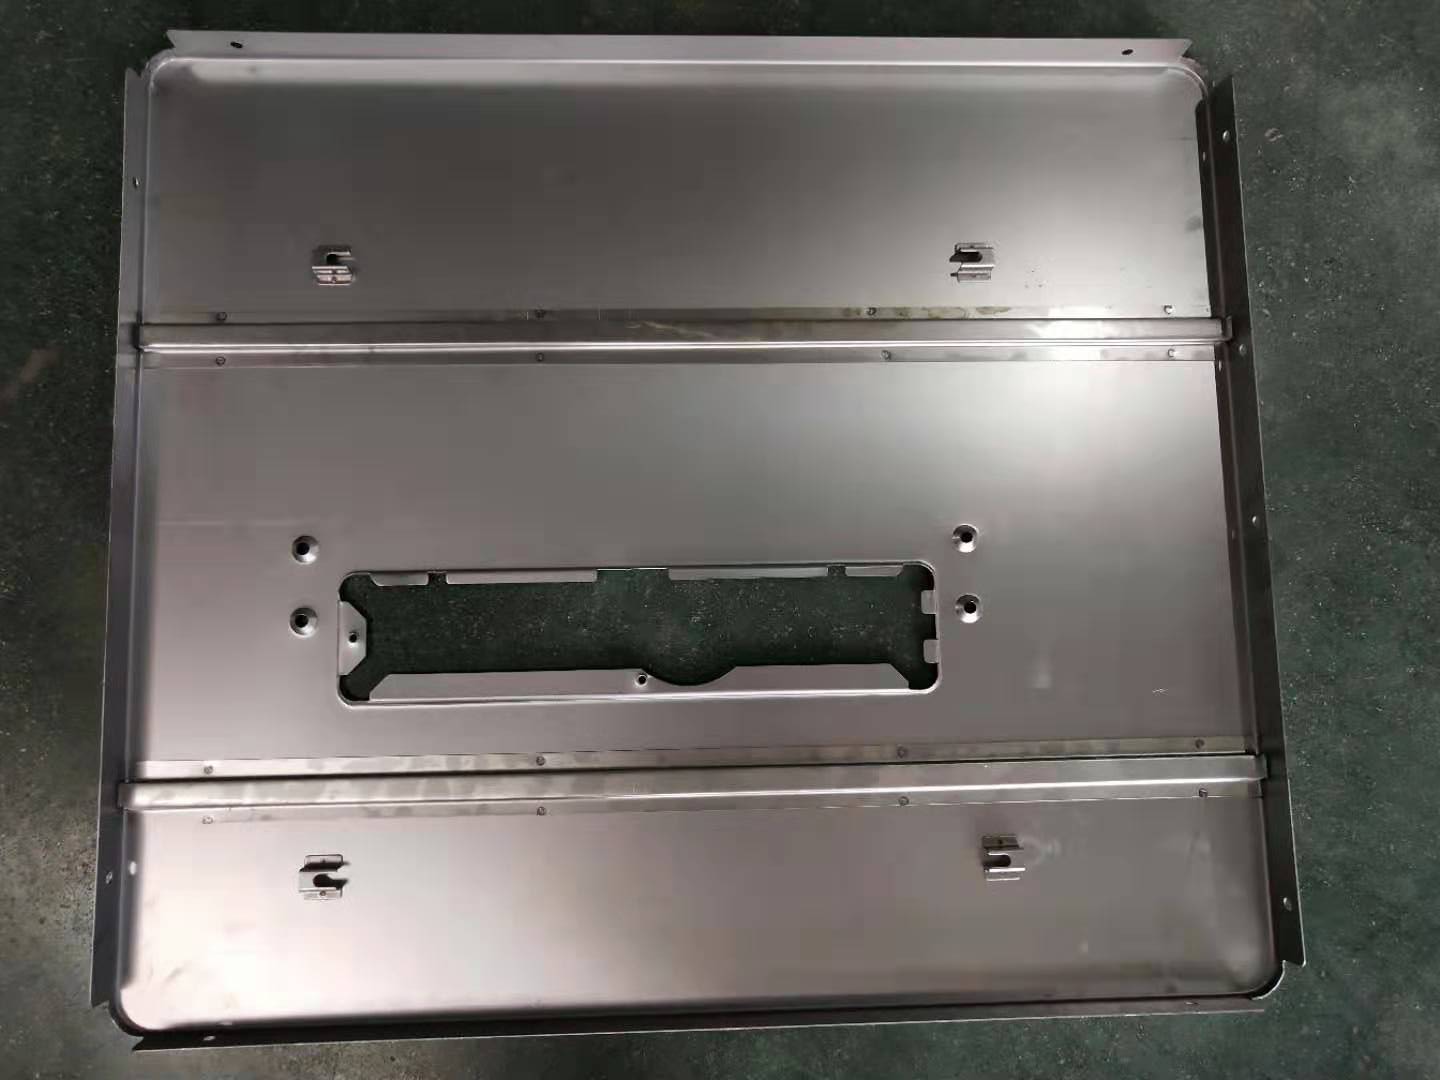 Stiffener spot welding at lug convex welding